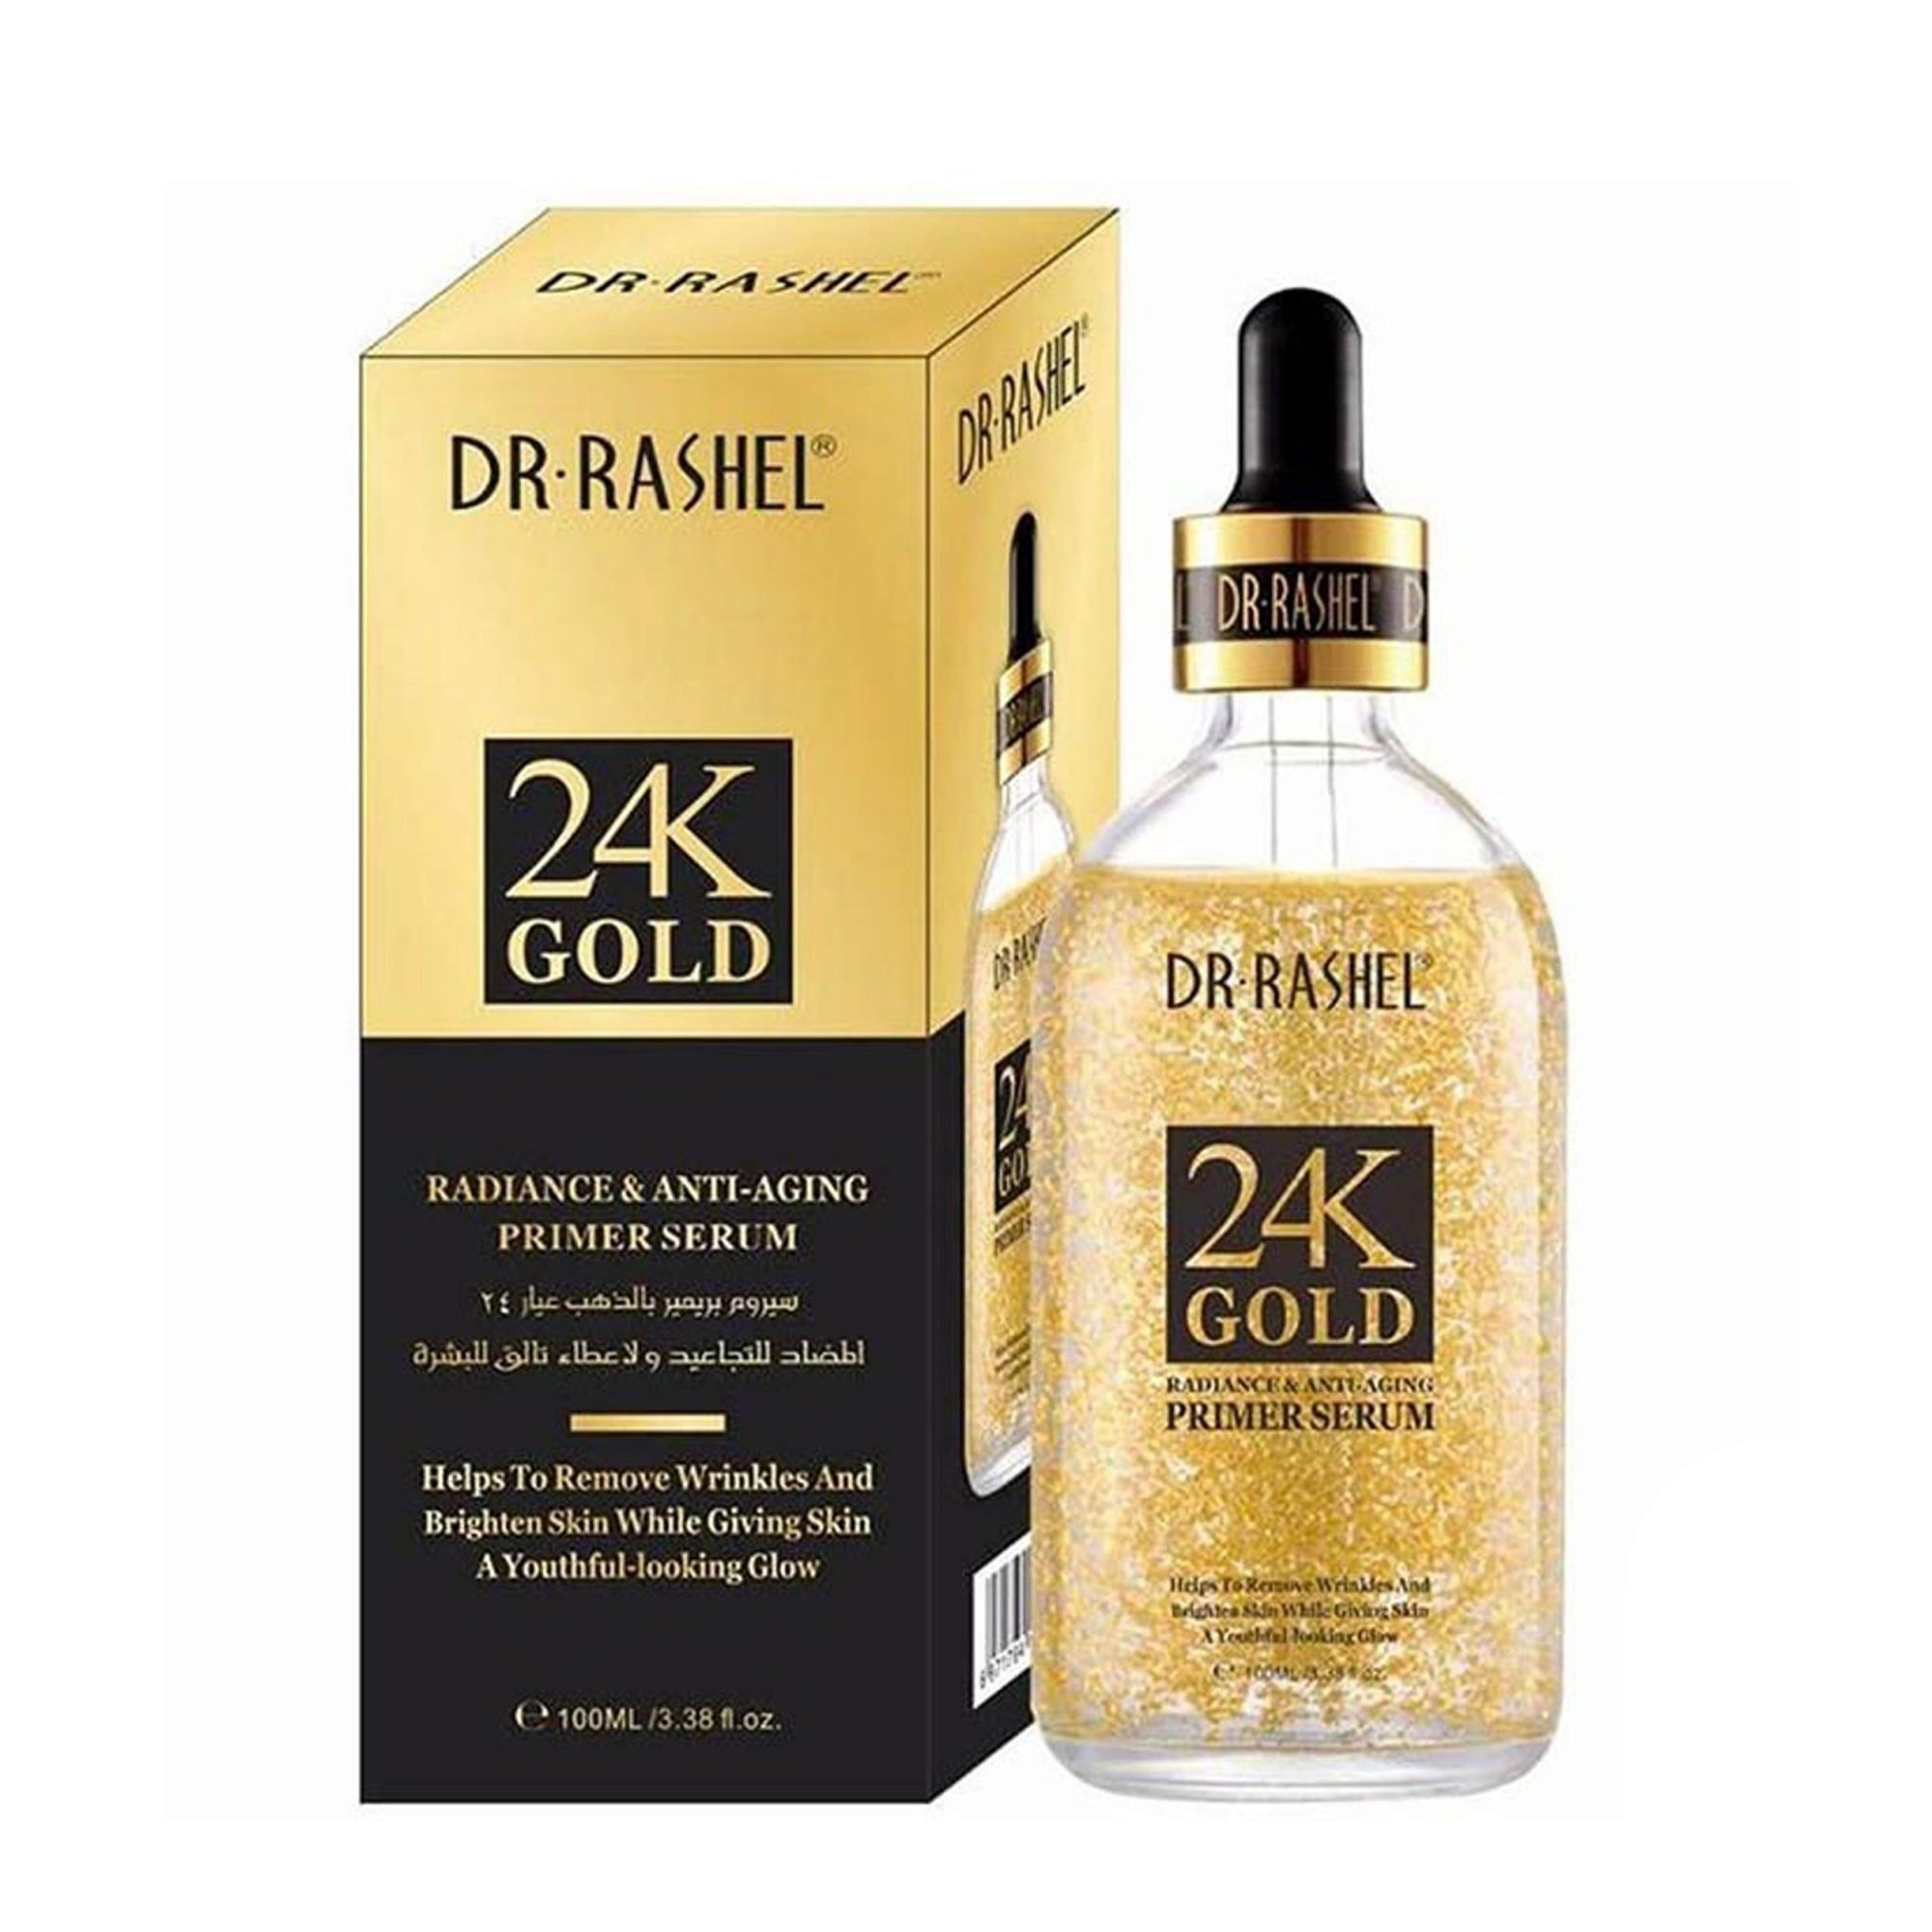 Dr Rashel 24K Gold Radiance & Anti Agging Primer Serum 100ml freeshipping - lasertag.pk